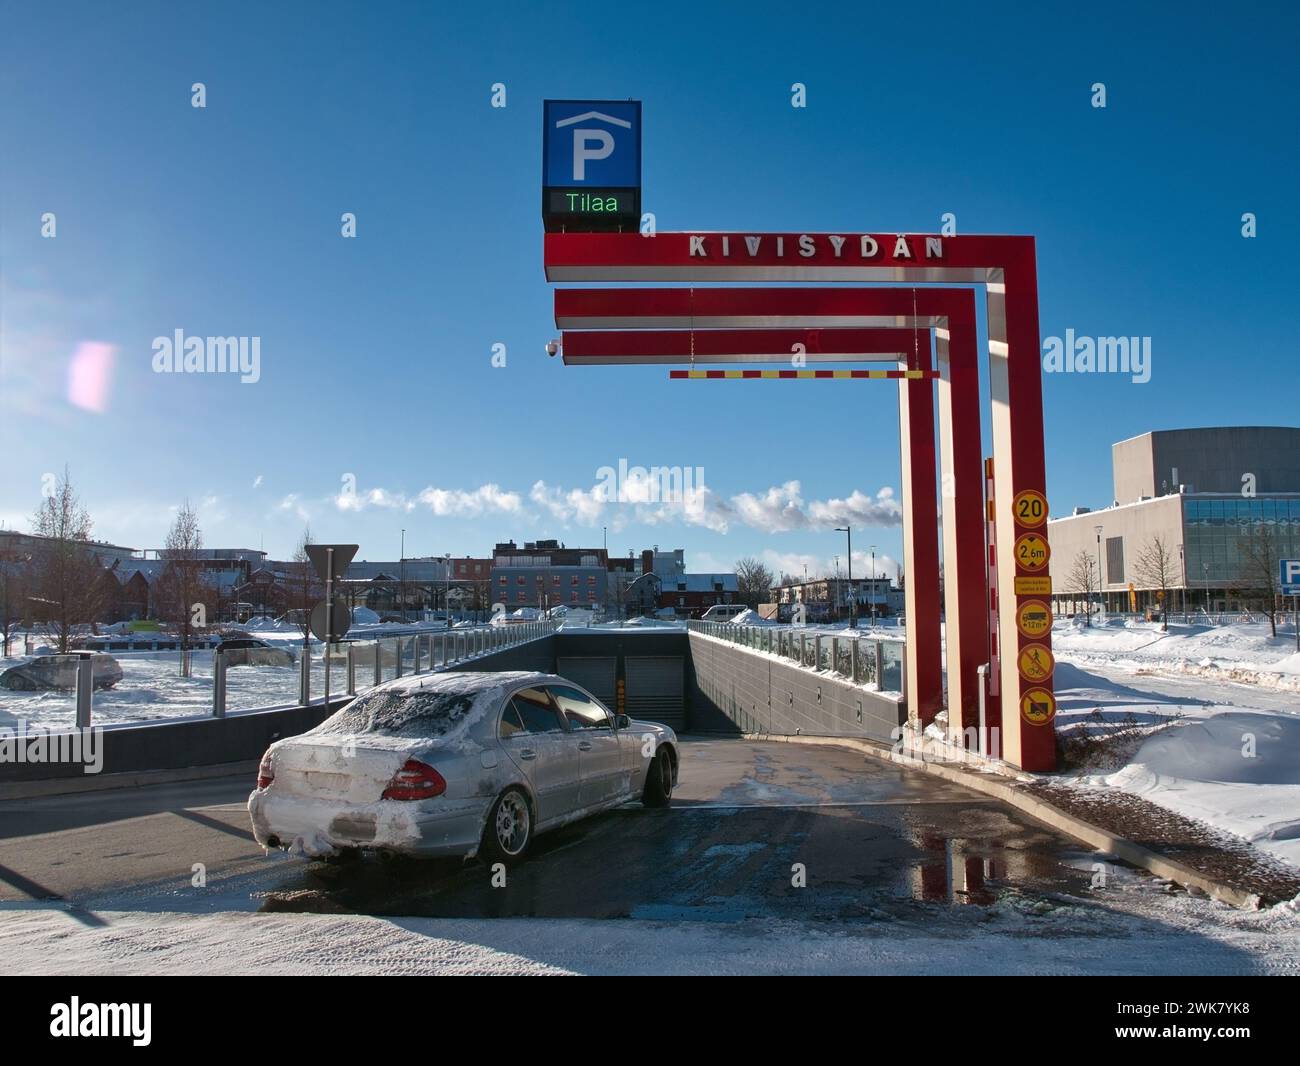 entrance to the underground parking lot Kivisydän in Oulu Finland Stock Photo